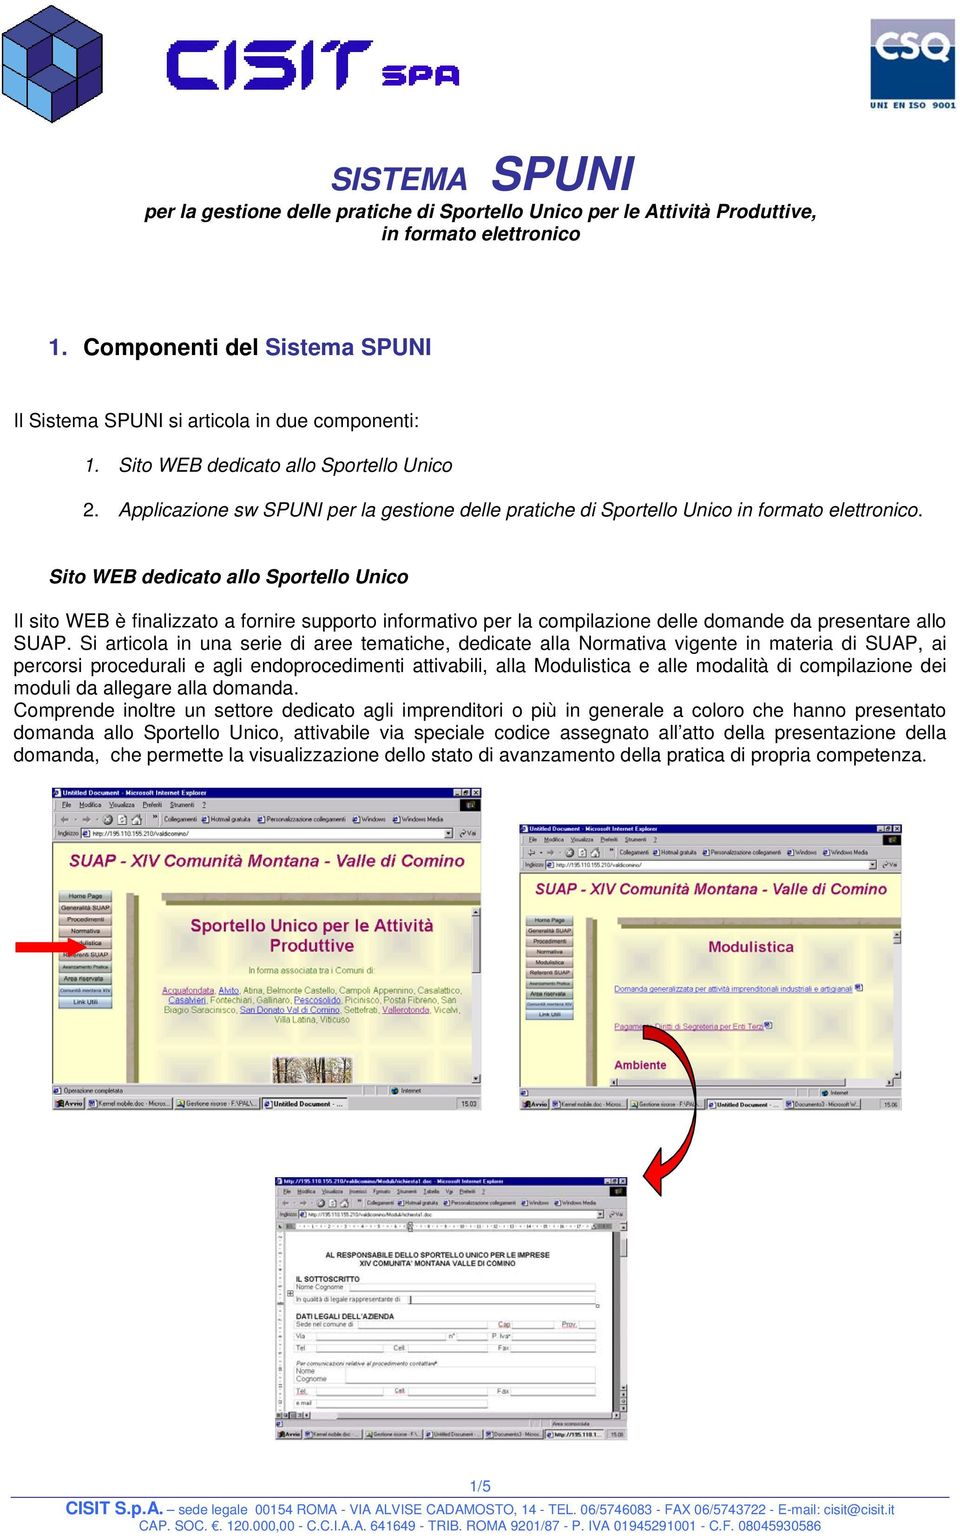 Sito WEB dedicato allo Sportello Unico Il sito WEB è finalizzato a fornire supporto informativo per la compilazione delle domande da presentare allo SUAP.